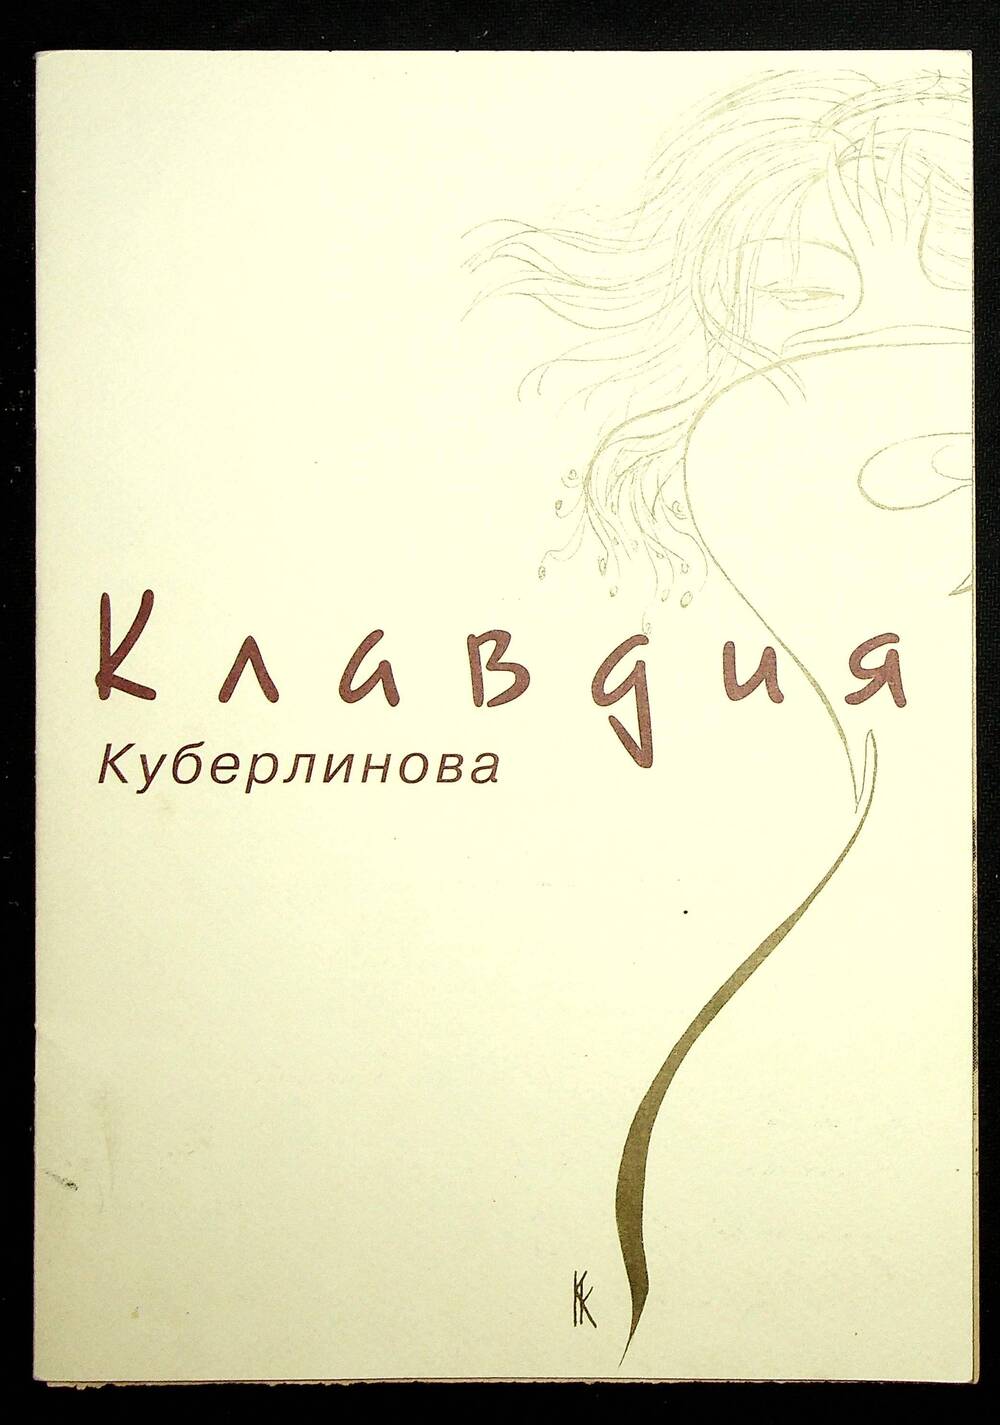 Буклет-календарь Клавдии Куберлиновой за 1999 г.